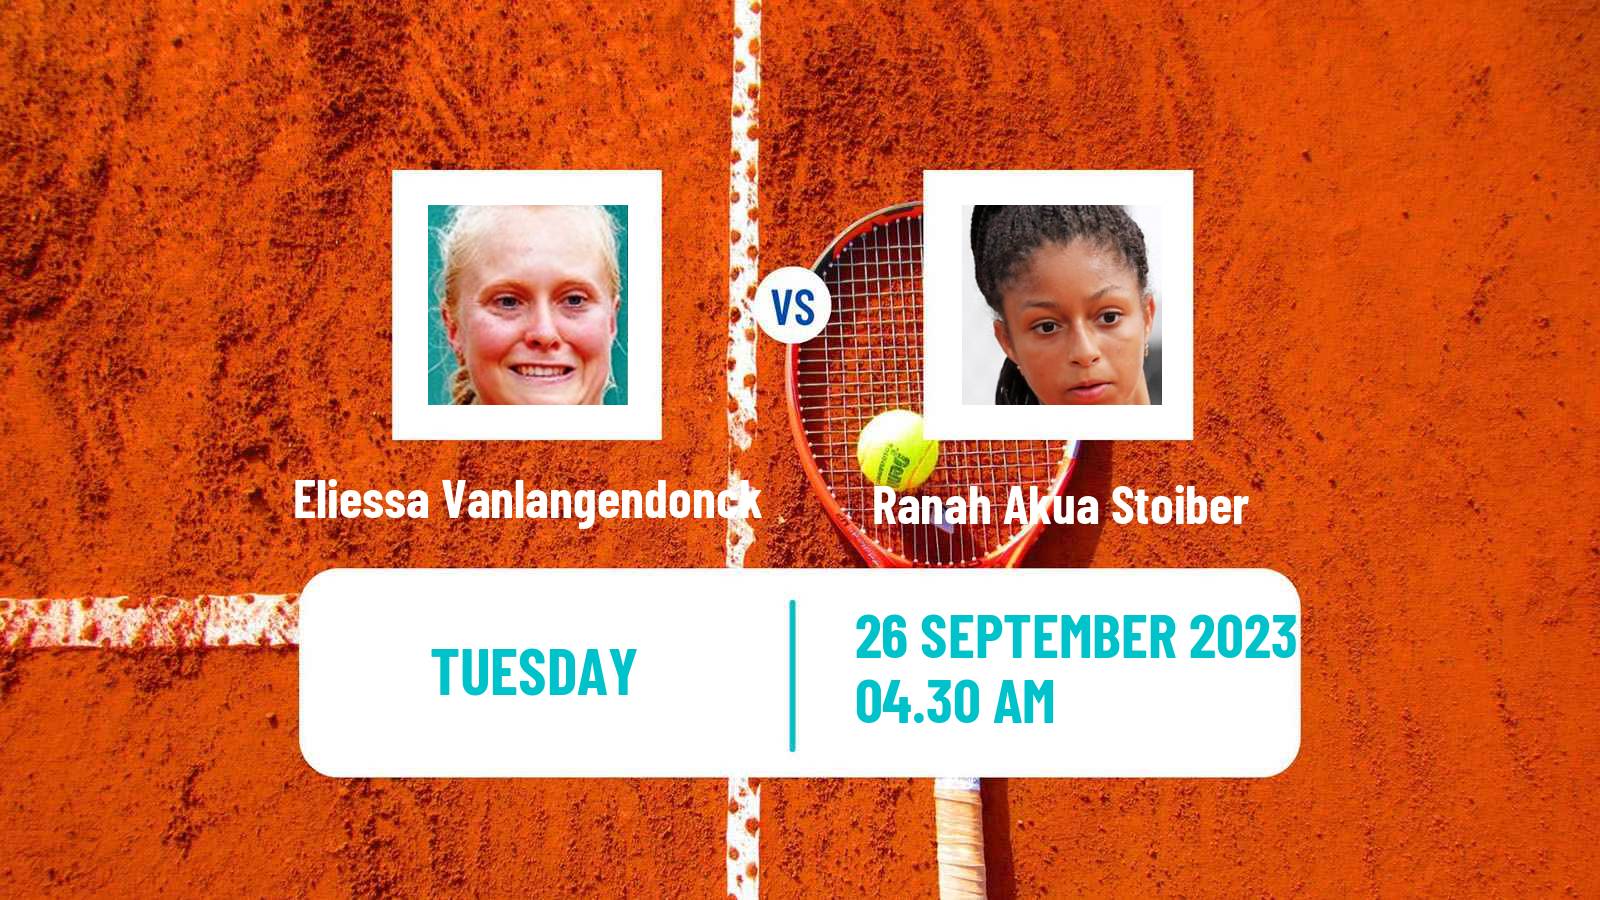 Tennis ITF W15 Monastir 34 Women Eliessa Vanlangendonck - Ranah Akua Stoiber